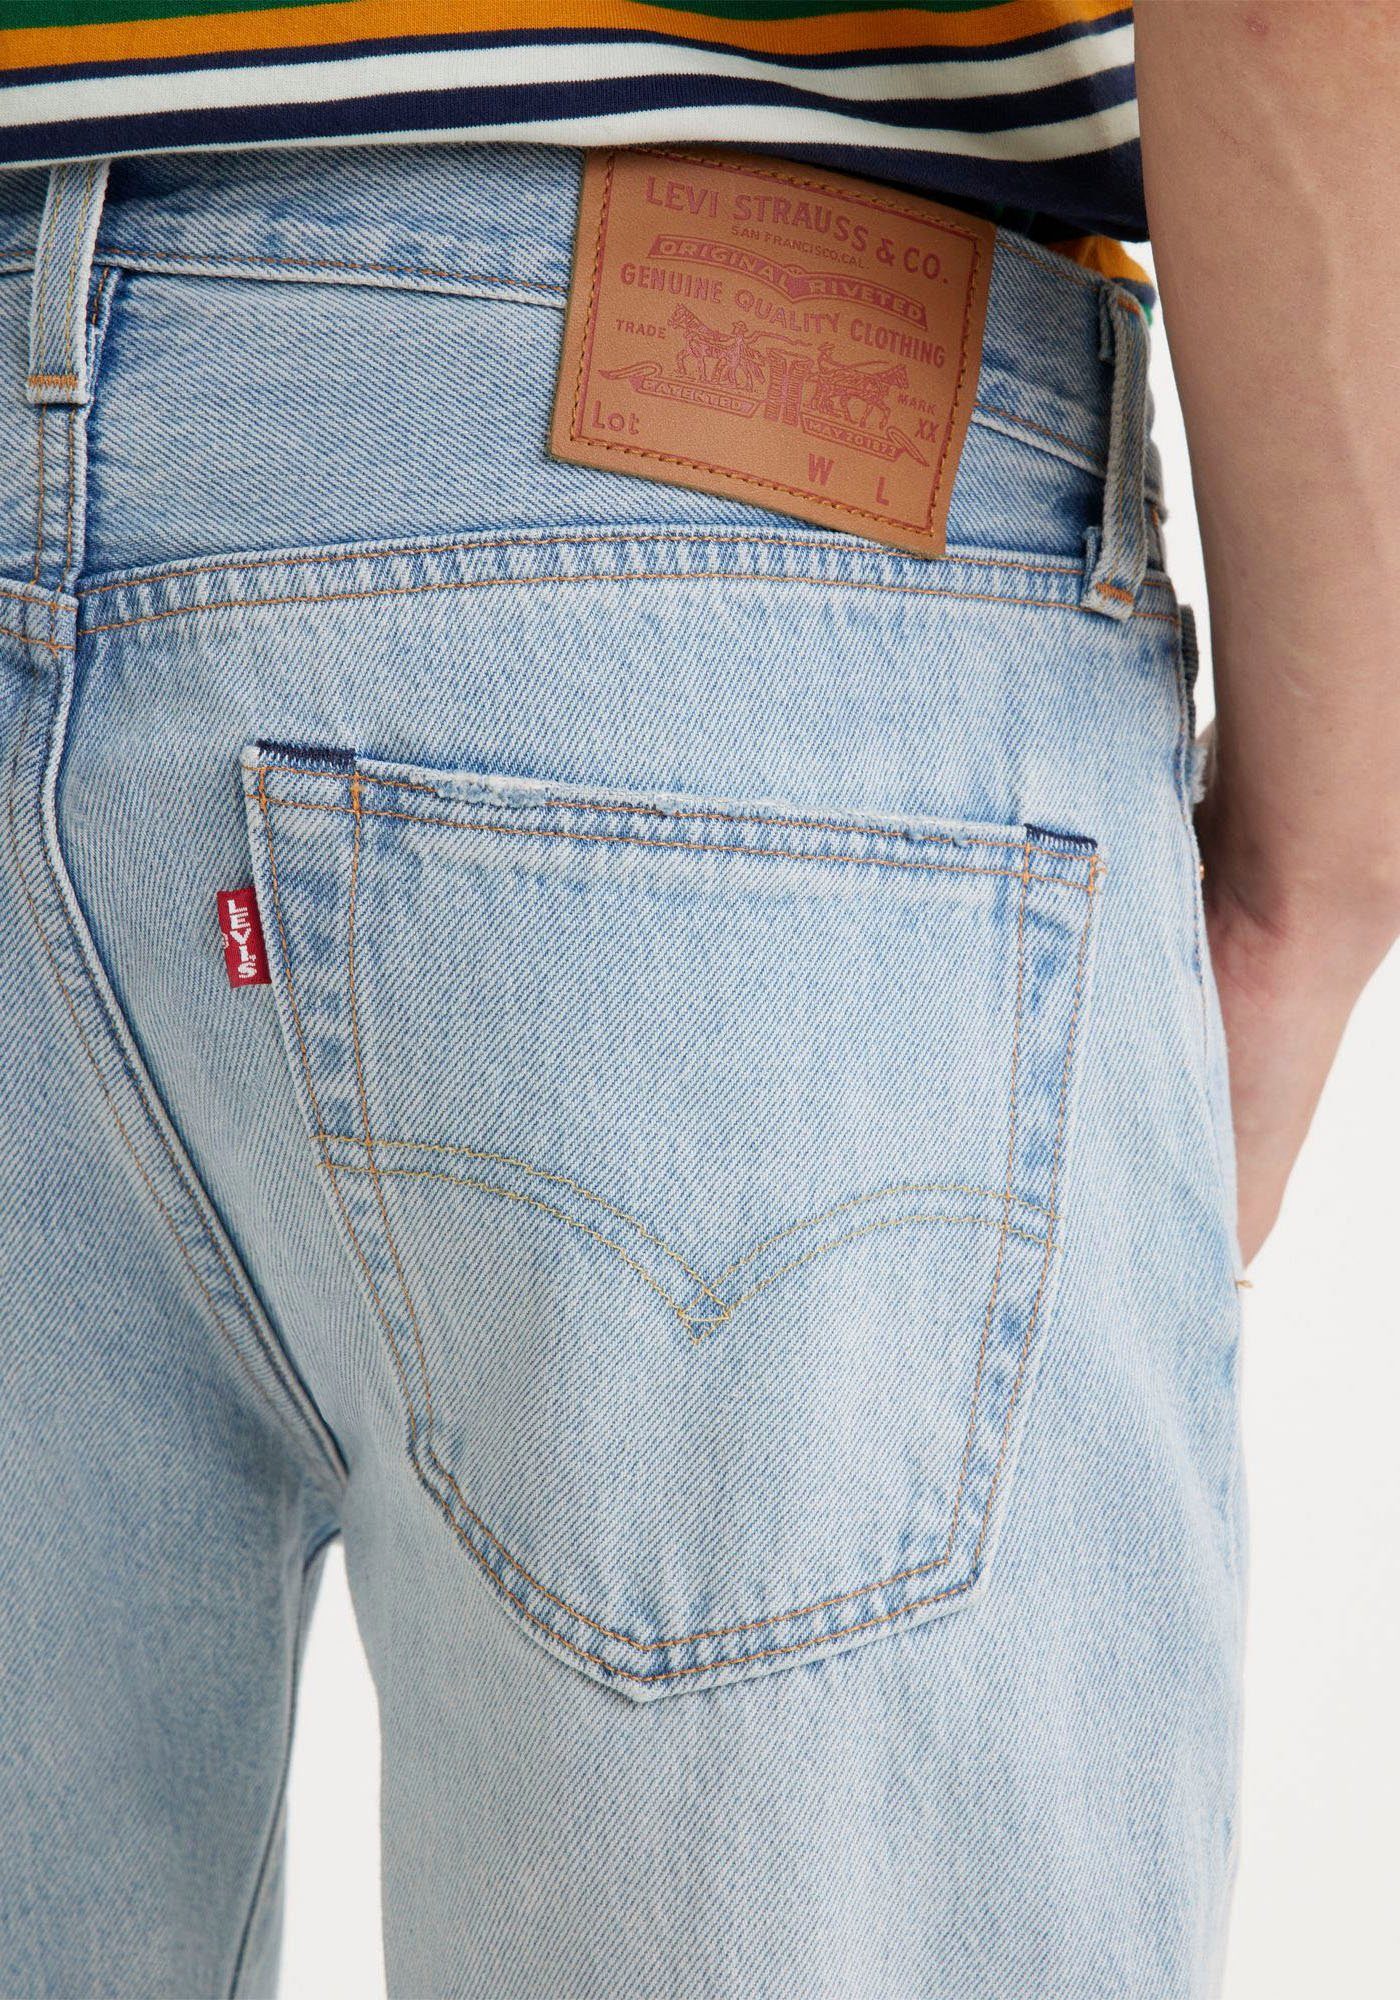 INDIGO 501 ORIG Markenlabel Destroyed-Jeans DESTRUCTED mit Levi's® LIGHT VI'S